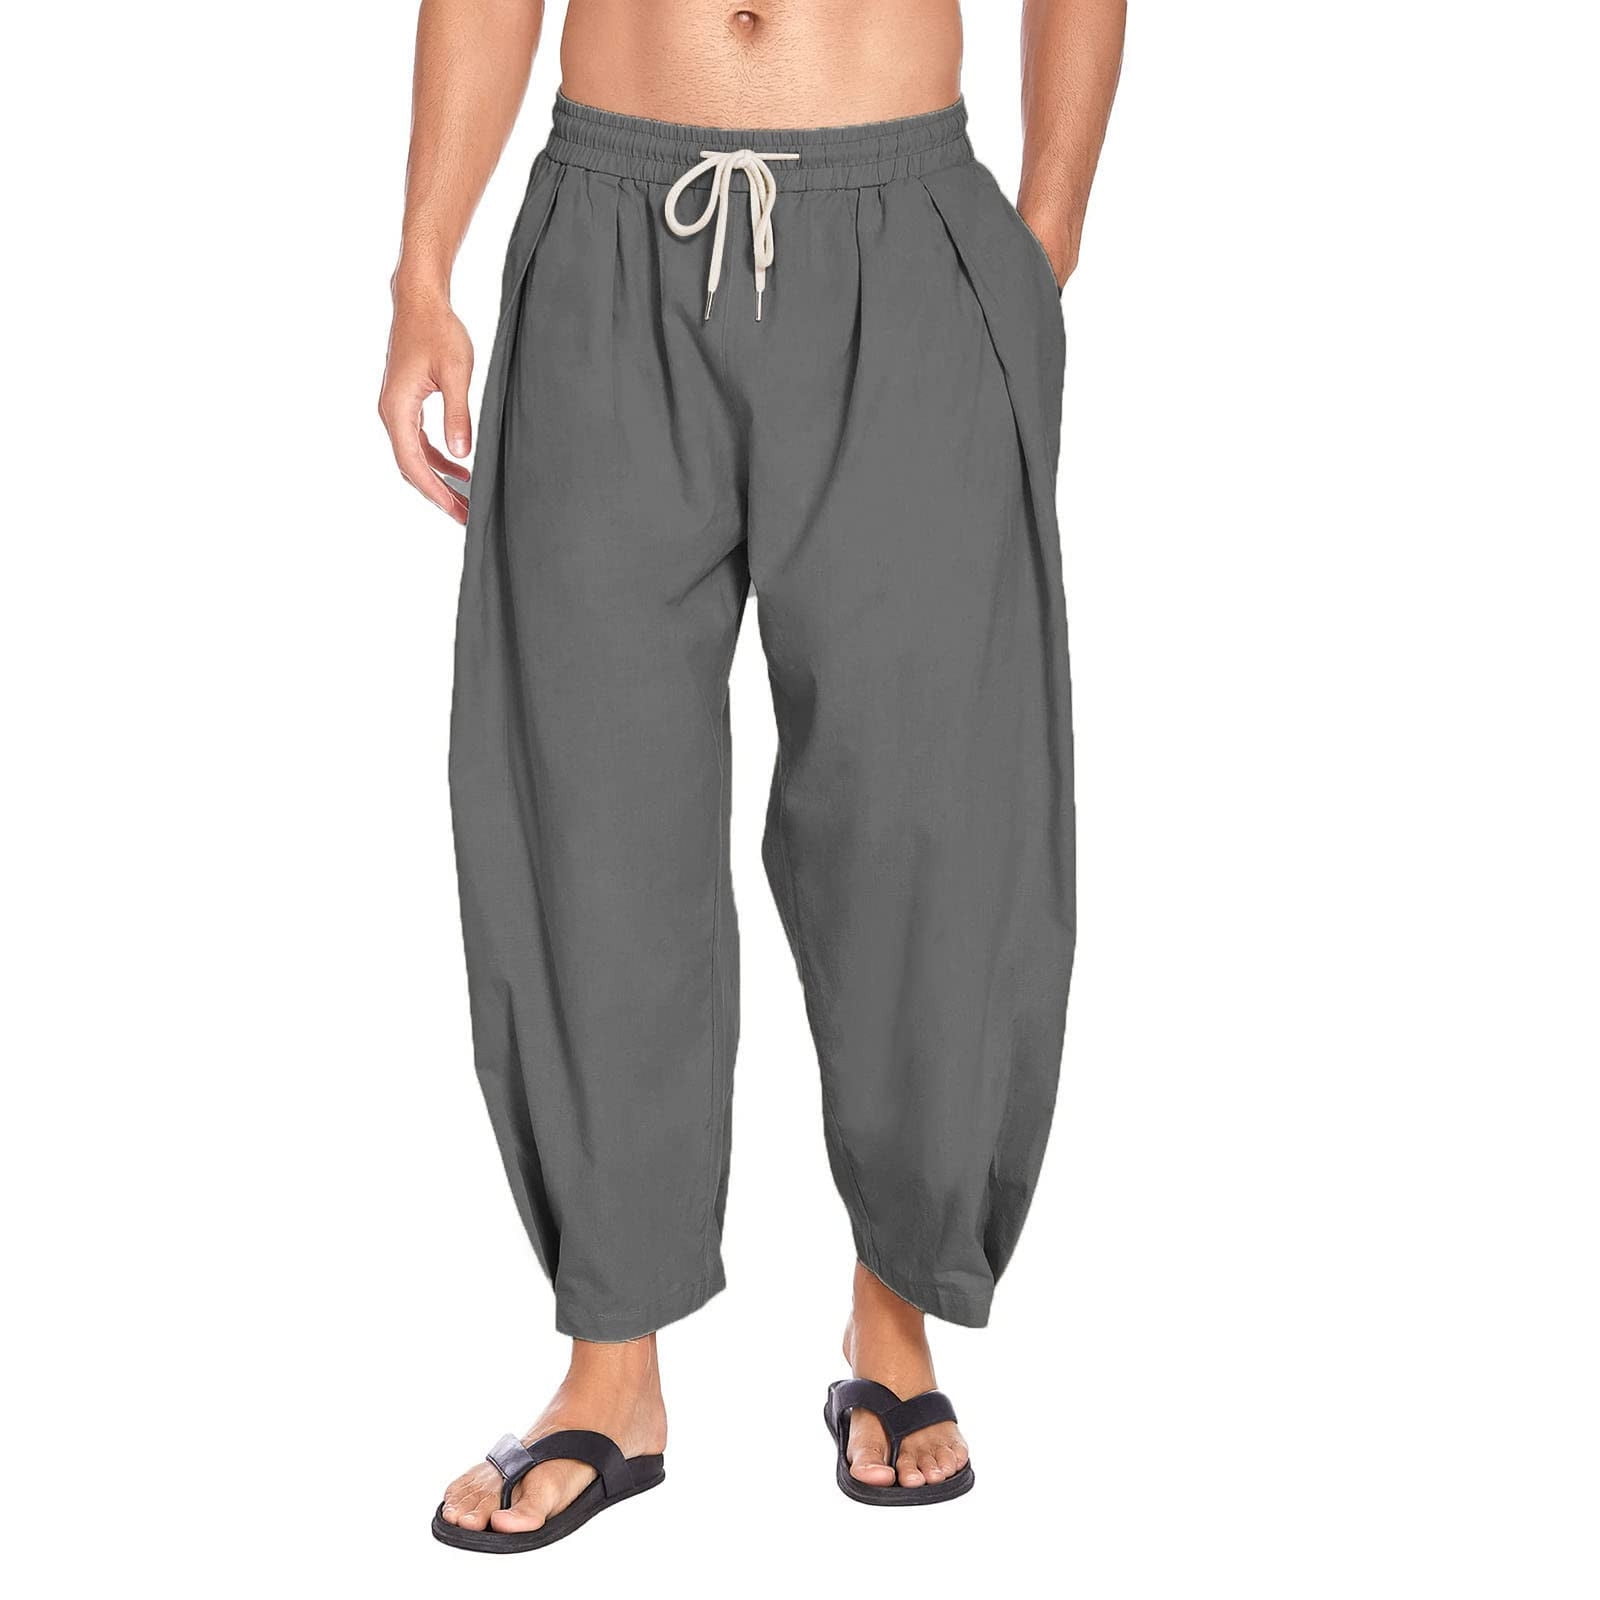 XFLWAM Men's Cotton Harem Pants Casual Baggy Pants Loose Fit Linen